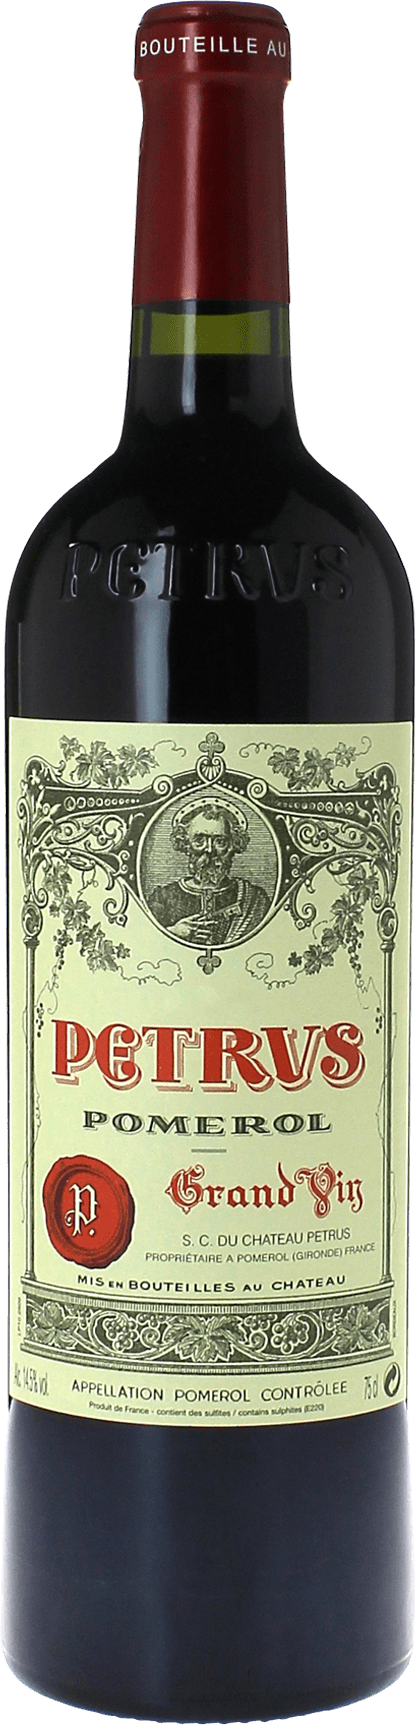 Petrus 2003  Pomerol, Bordeaux rouge